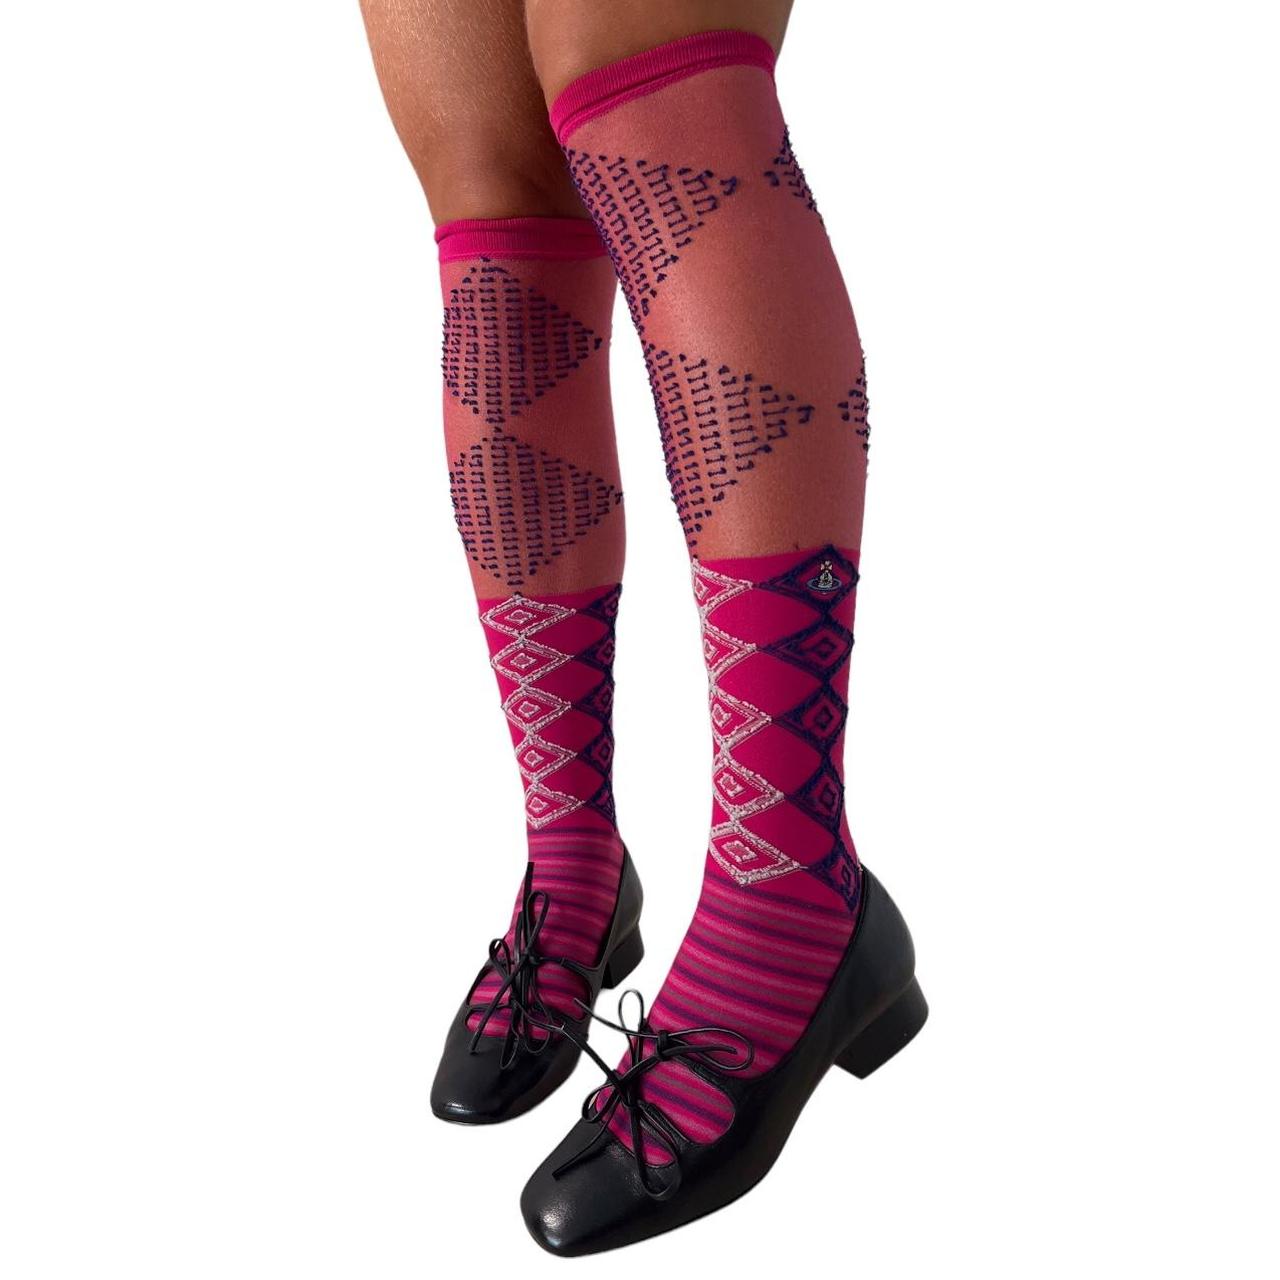 Vivienne Westwood preppy pink argyle high socks Pink... - Depop